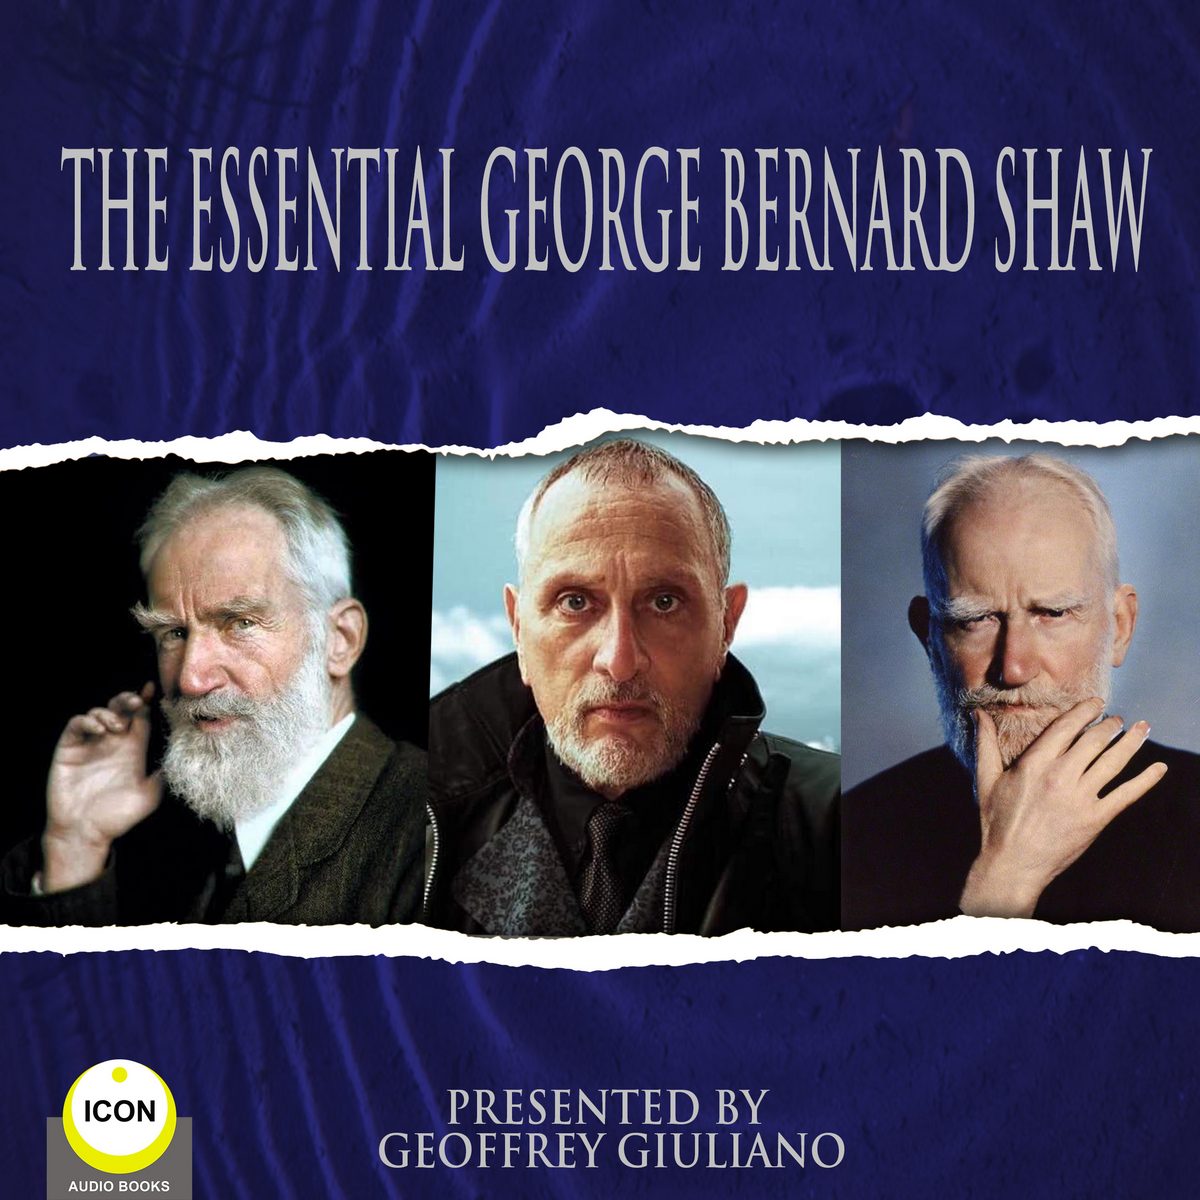 The Essential George Bernard Shaw